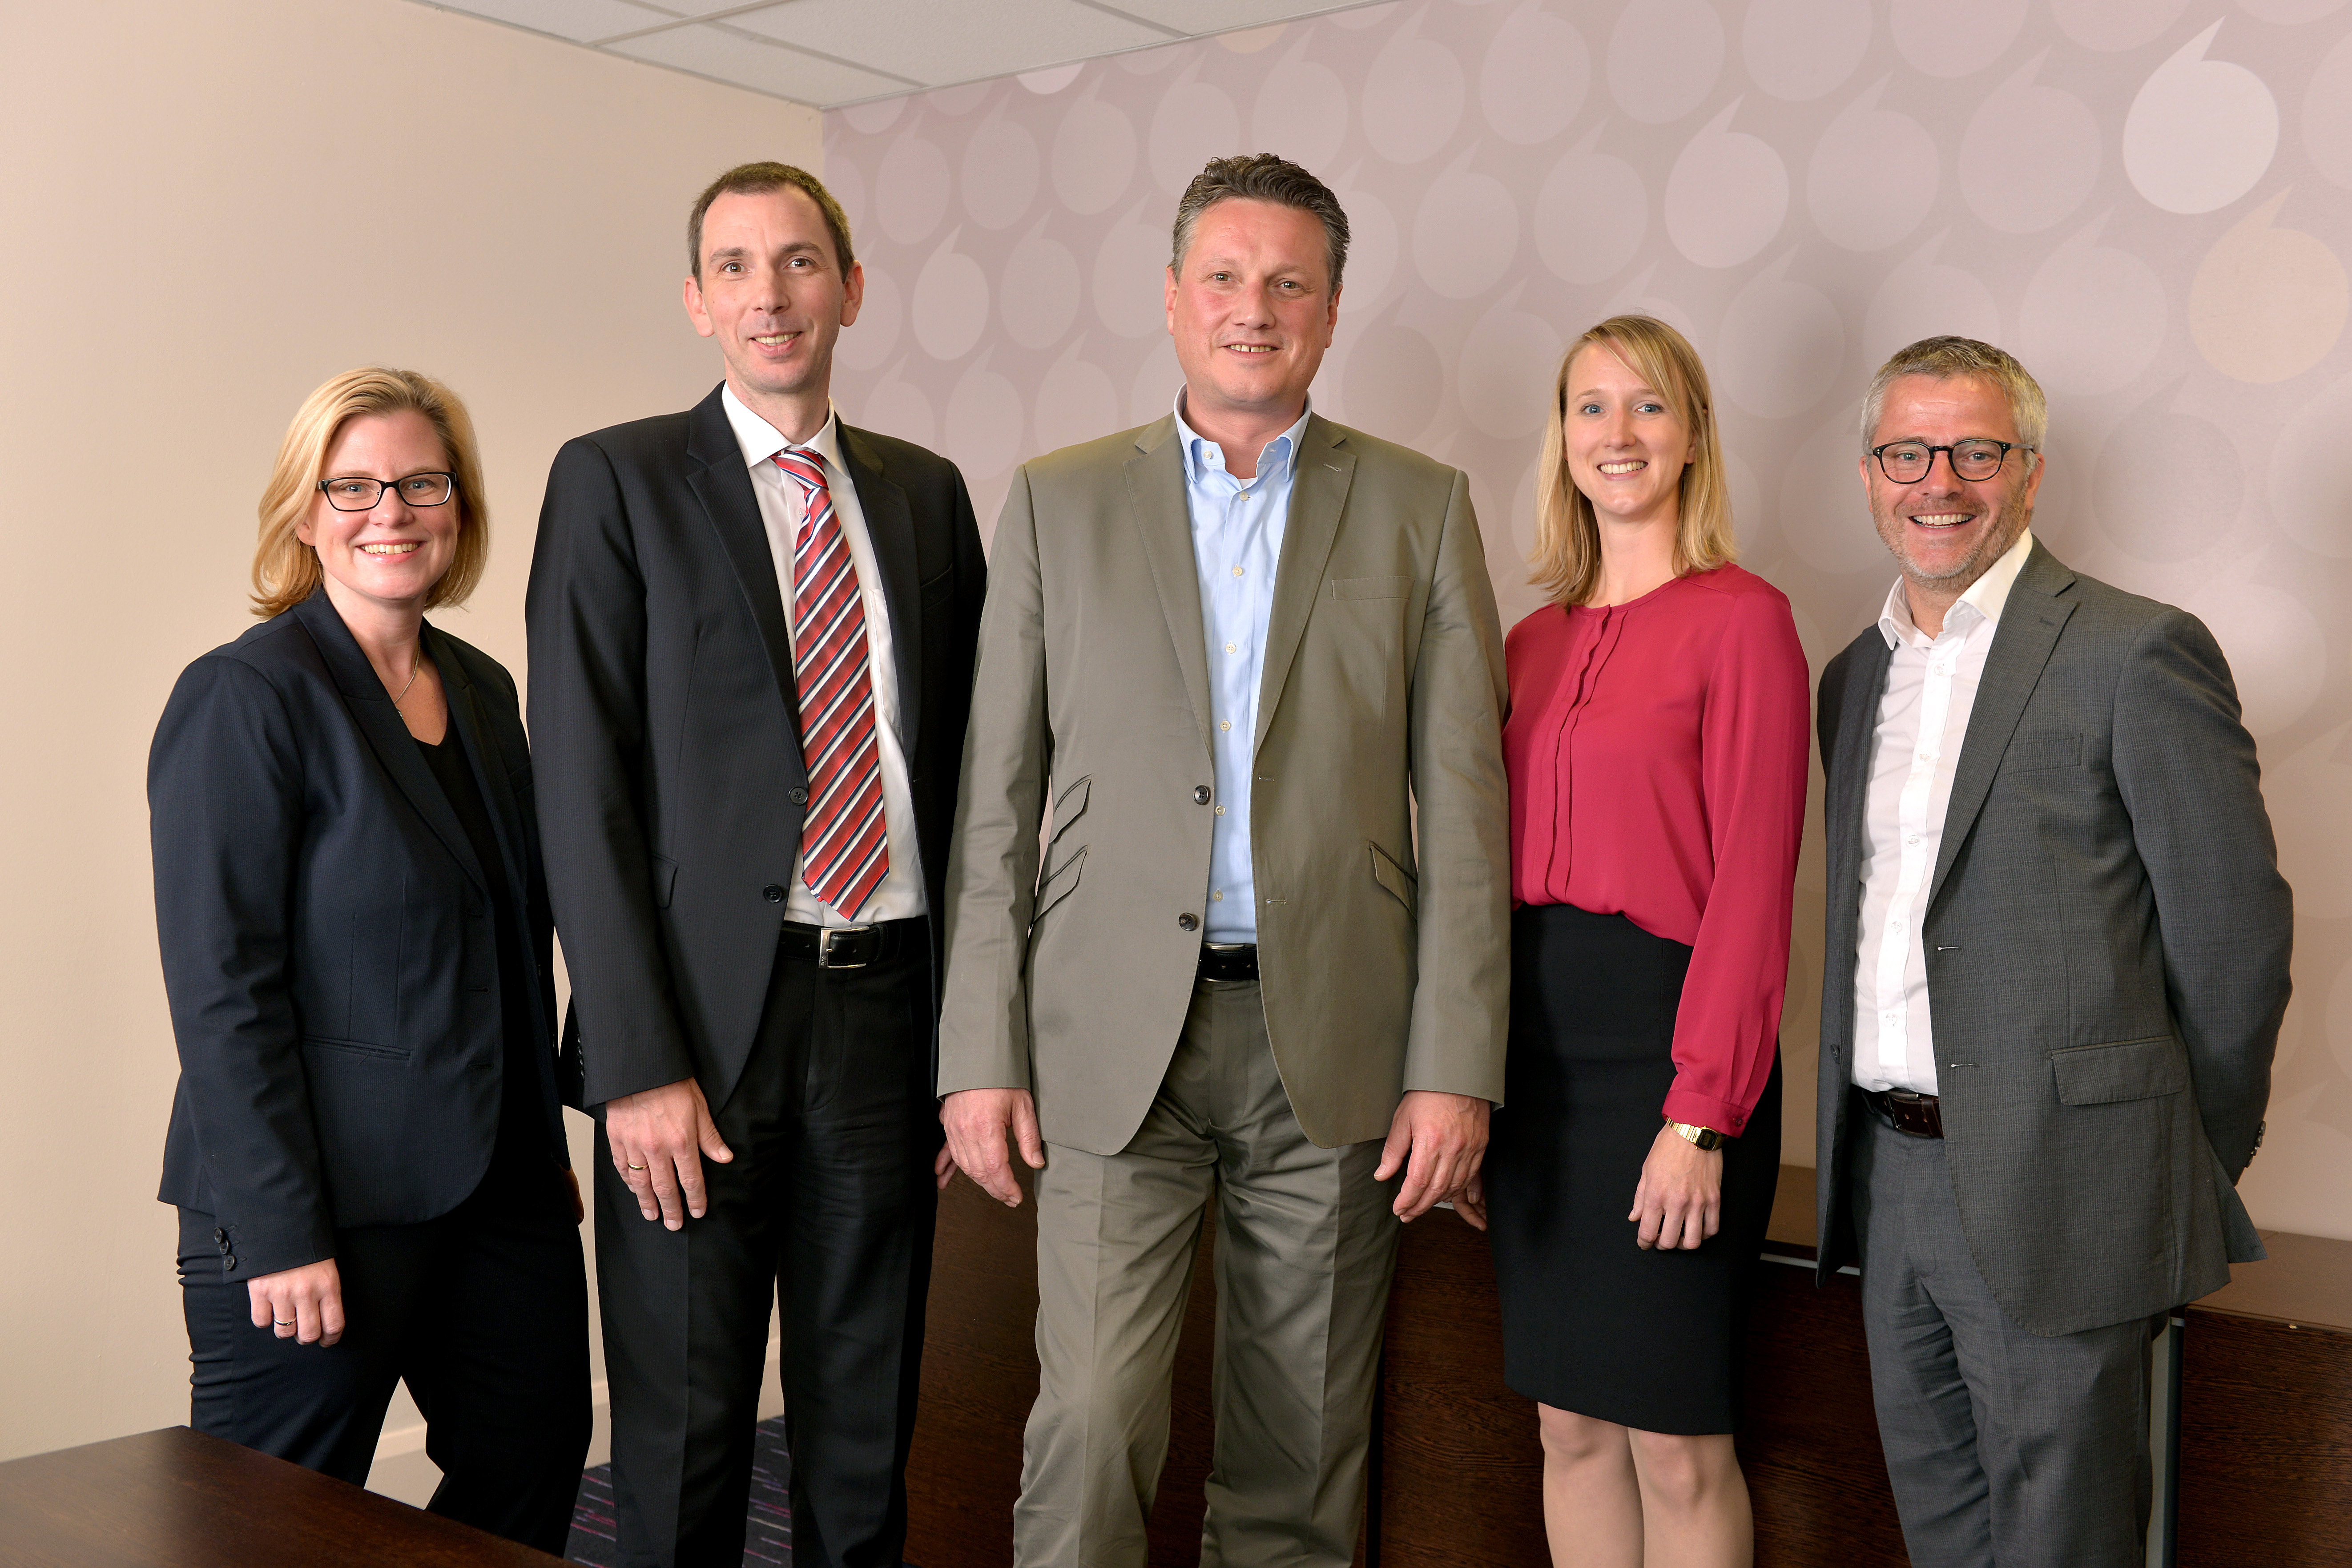 Das Premier Inn-Team für Deutschland steht (von links): Natalie Busch, Mark Sommer, Eric Hübbers, Elisabeth Knopp, Steve Hammond. Nicht im Bild: Richard Pearson